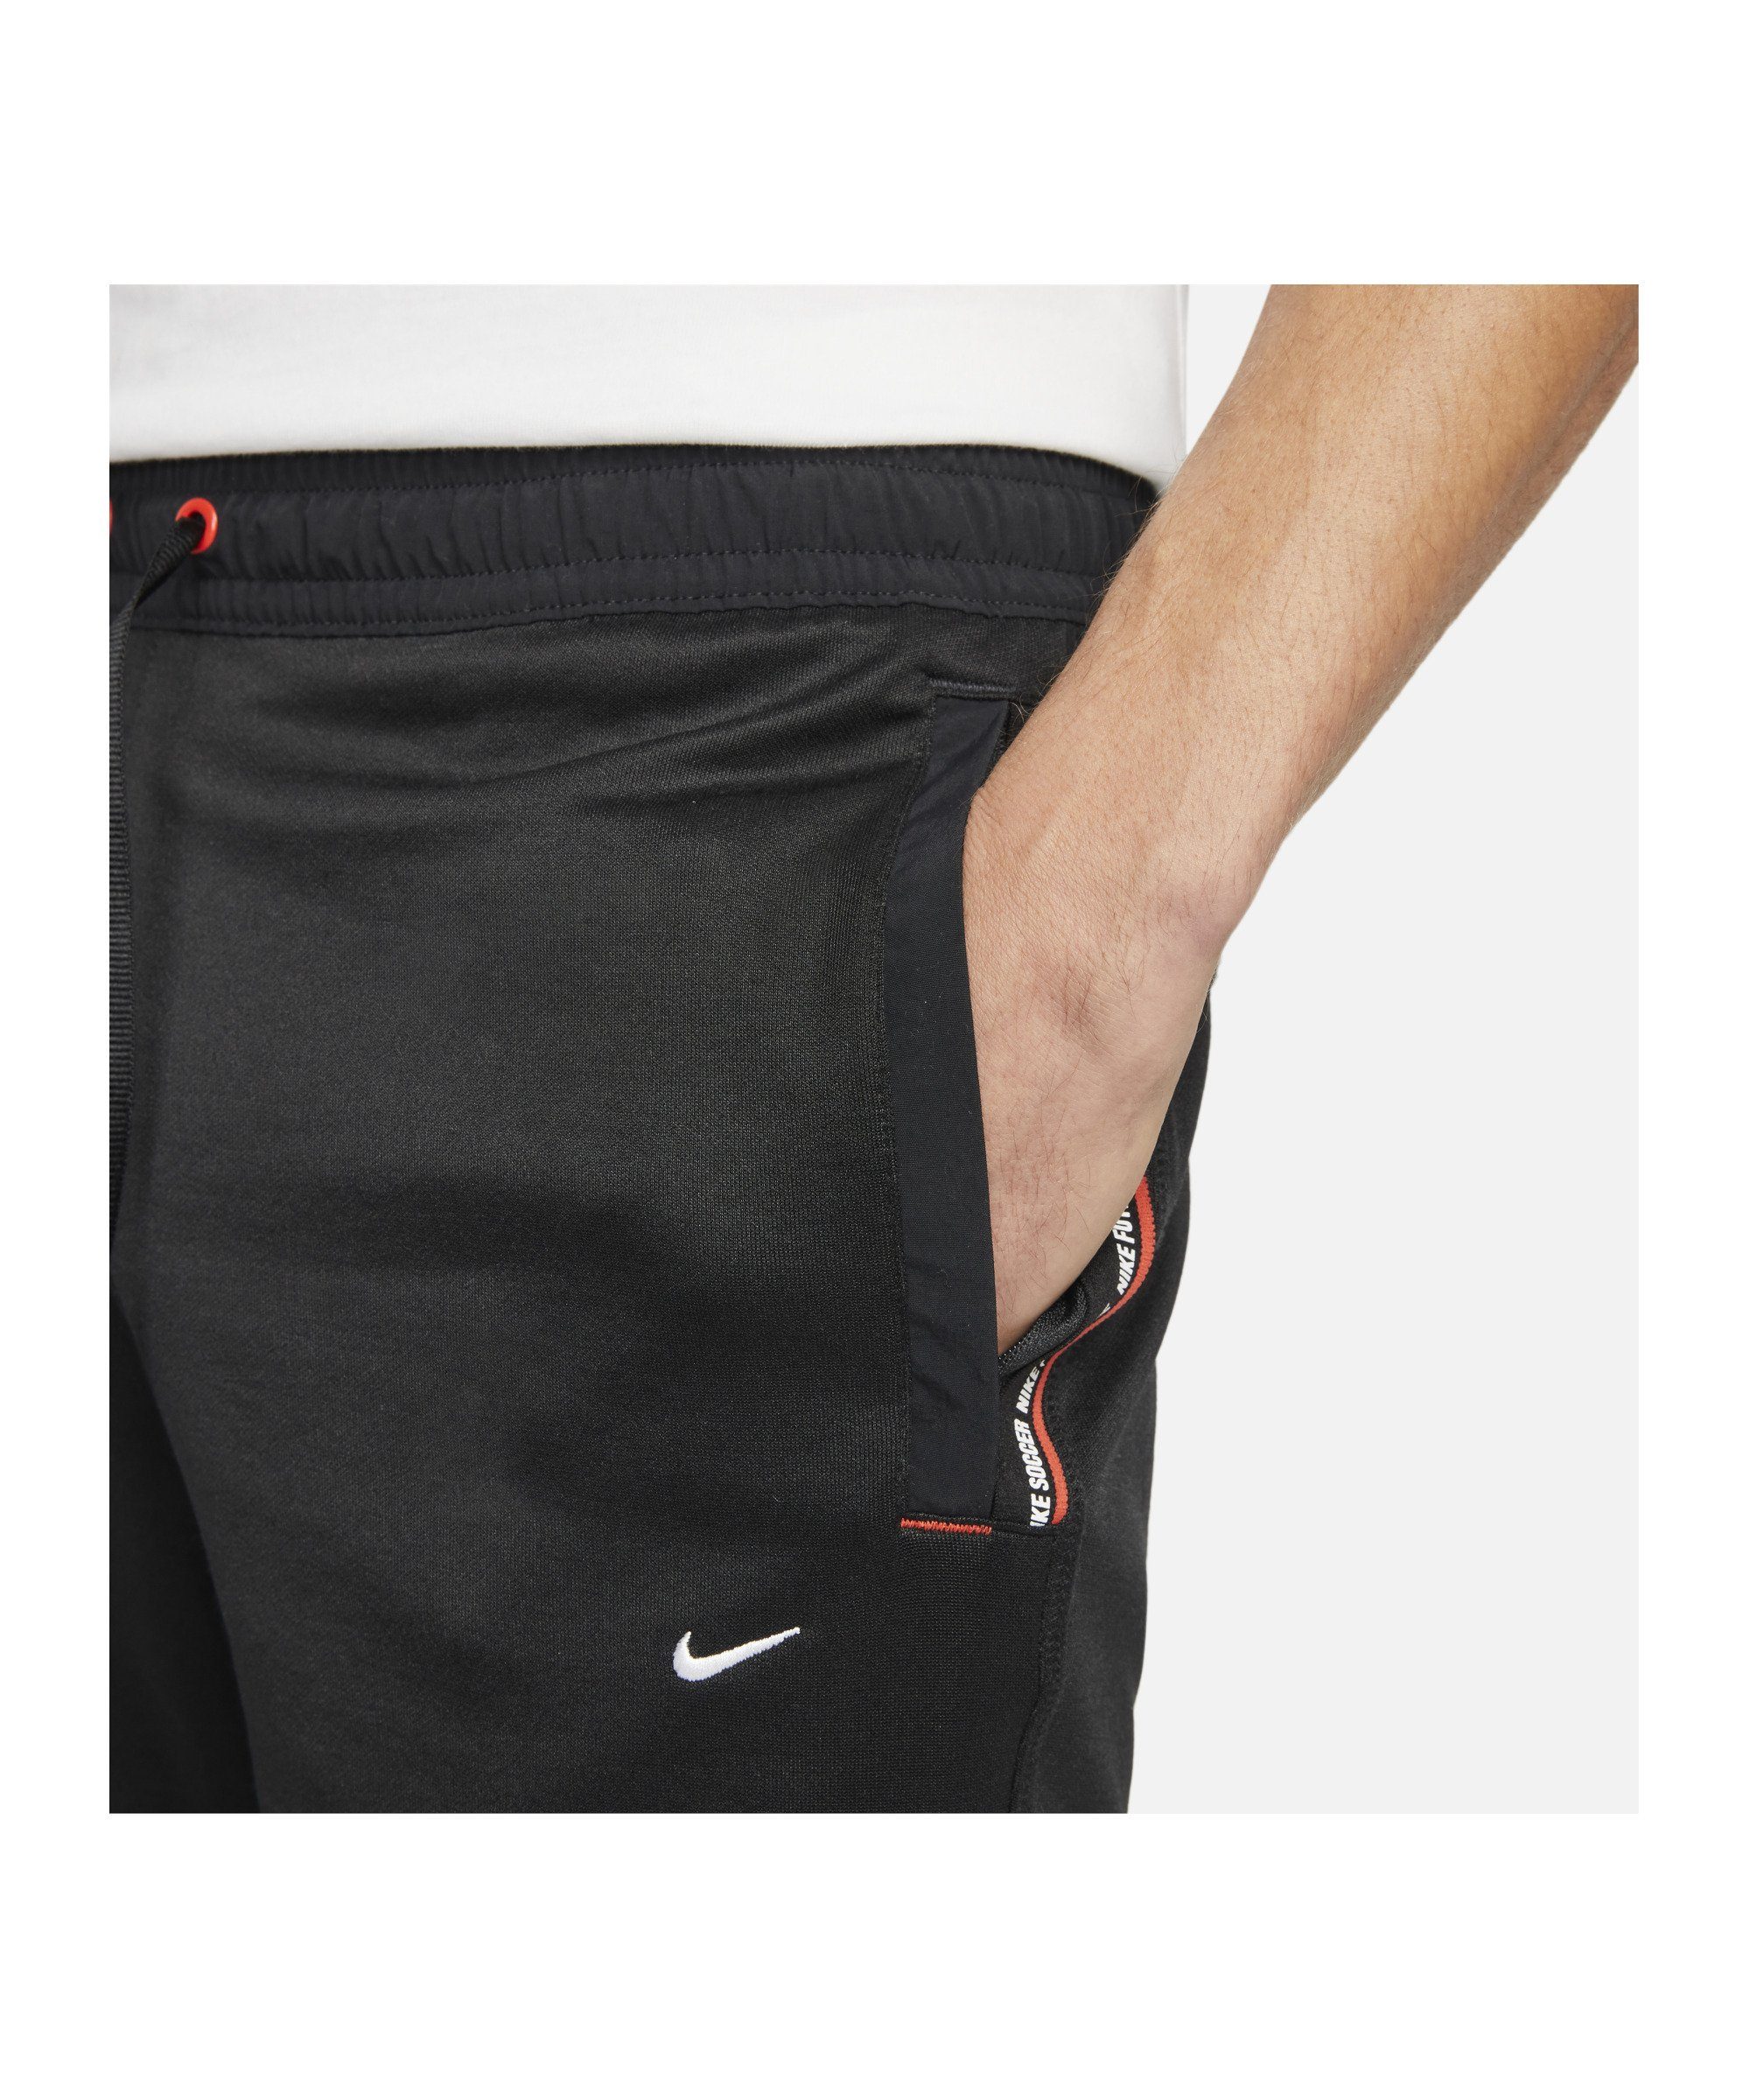 schwarzrotweiss F.C. Nike Short Jogginghose 8in Tribuna Sportswear